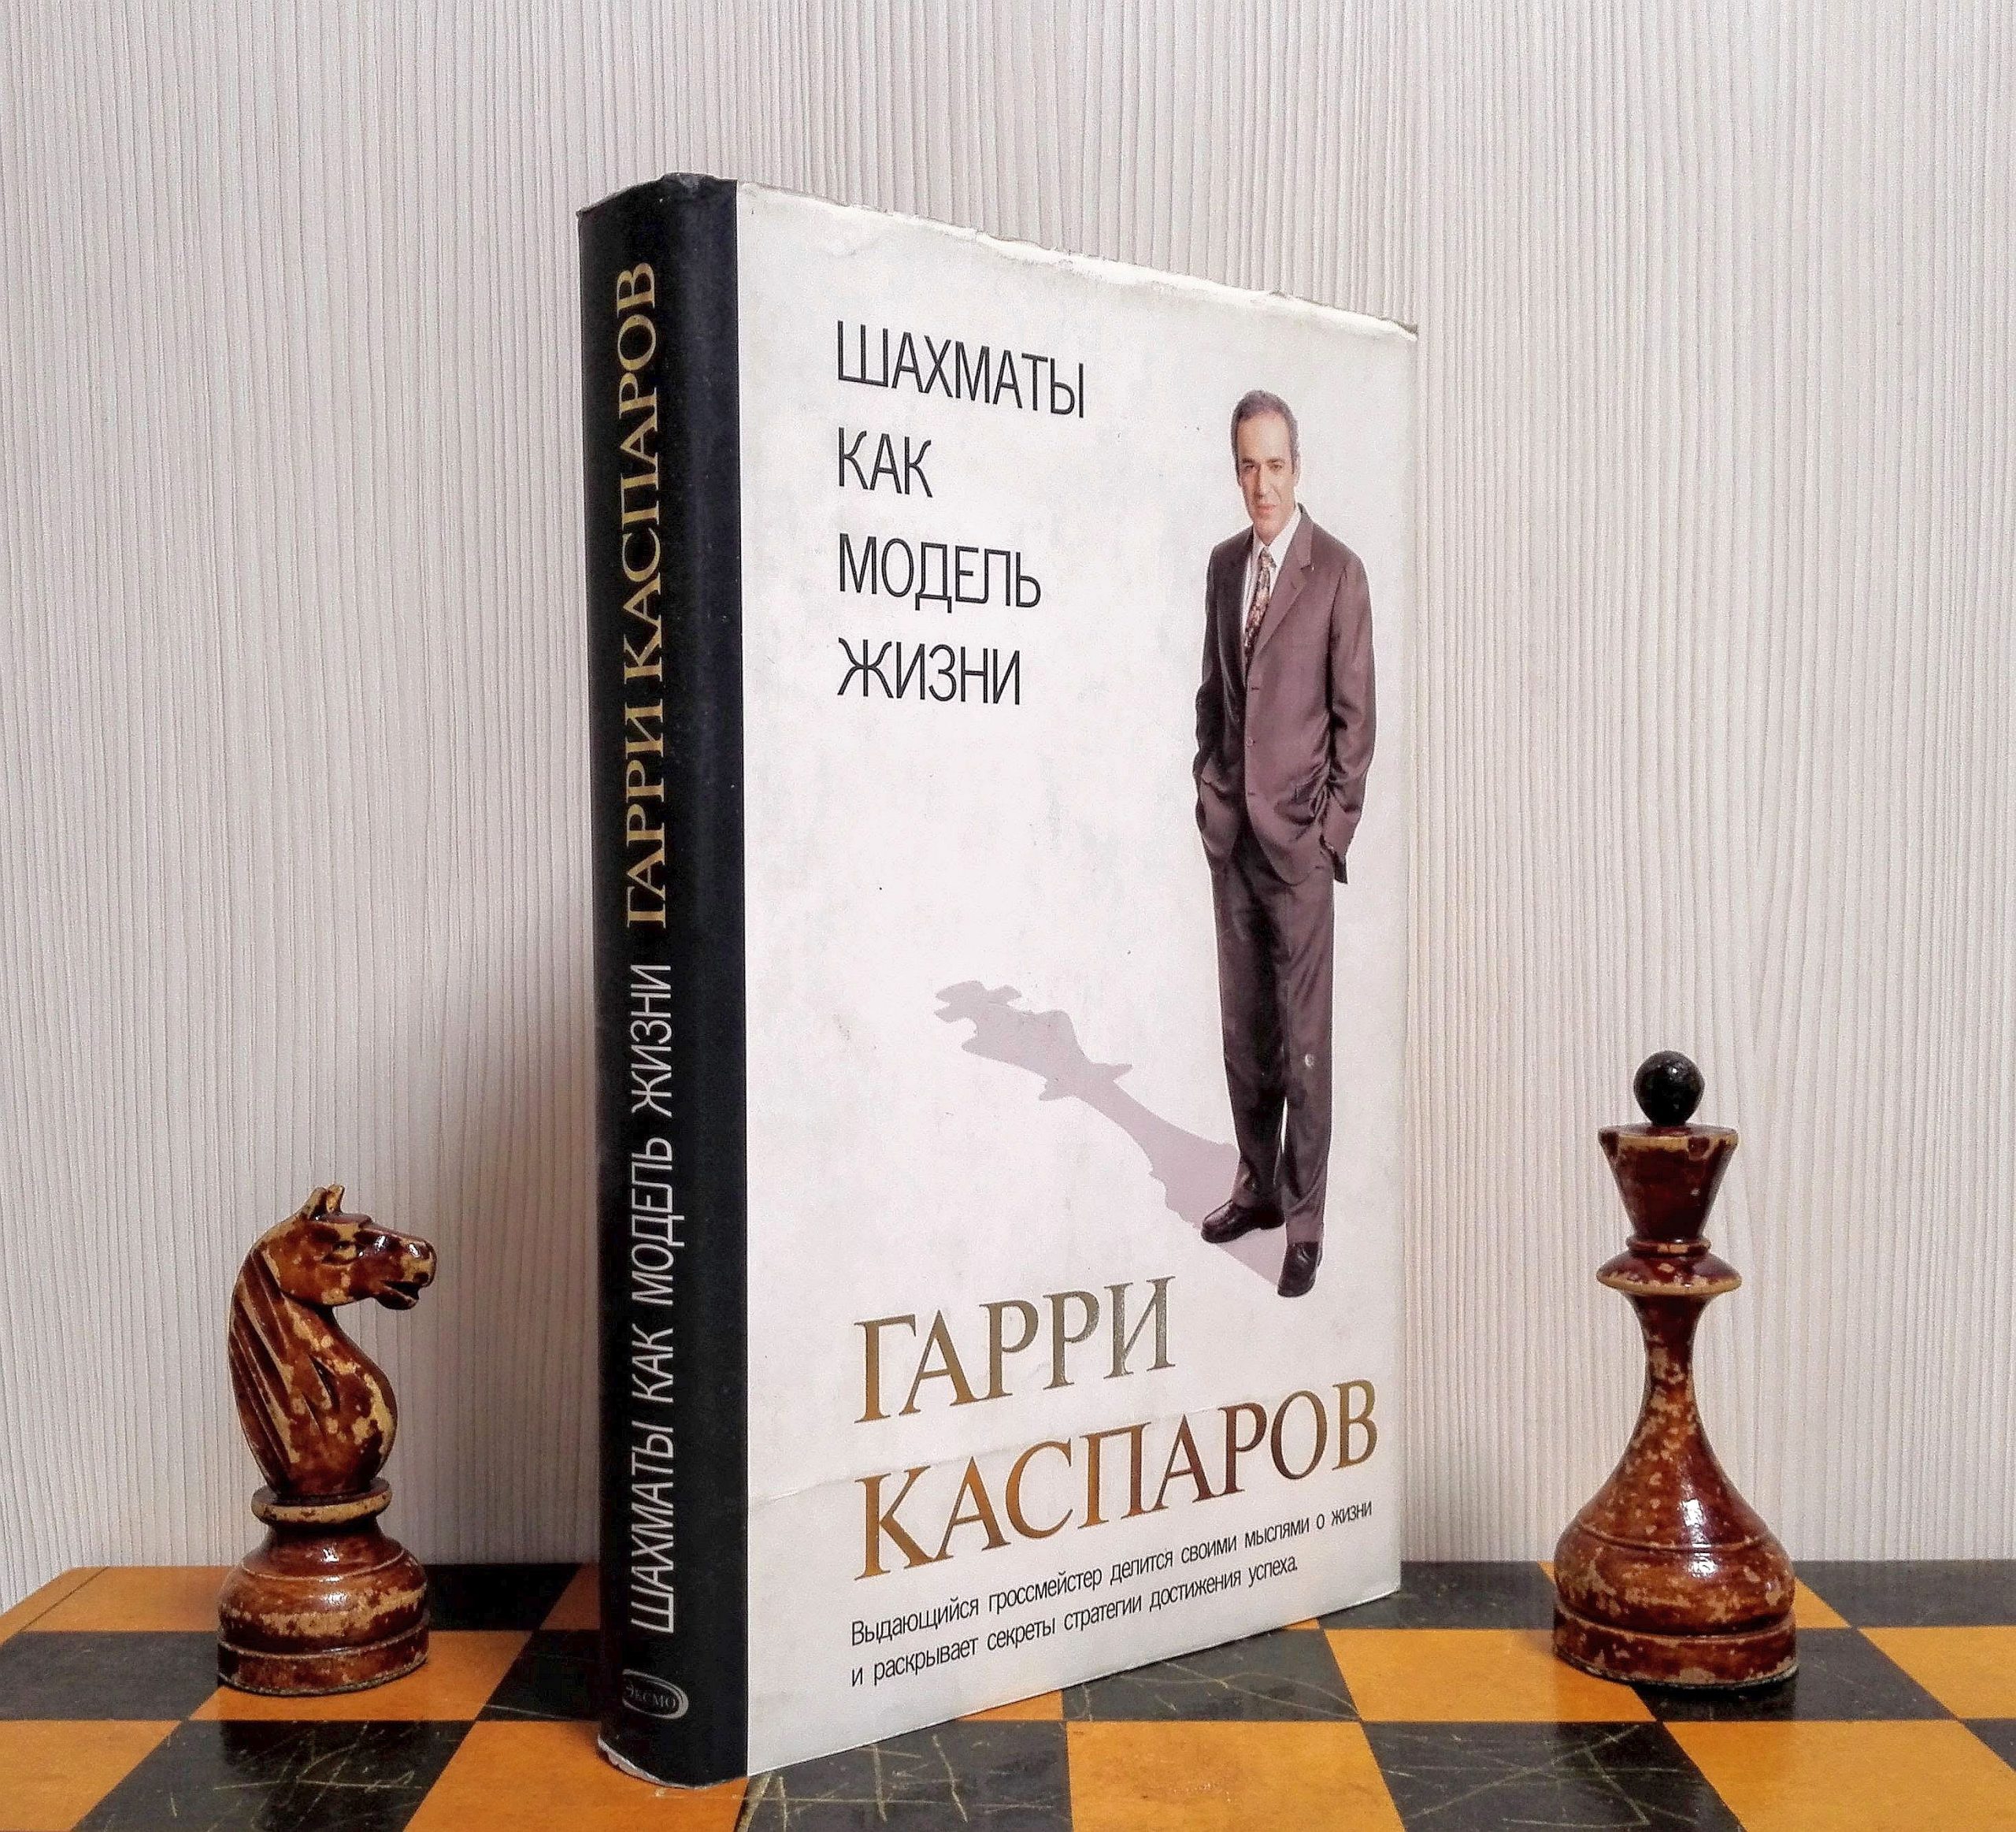 Garry Kasparov - Bertrand Livreiros - livraria Online